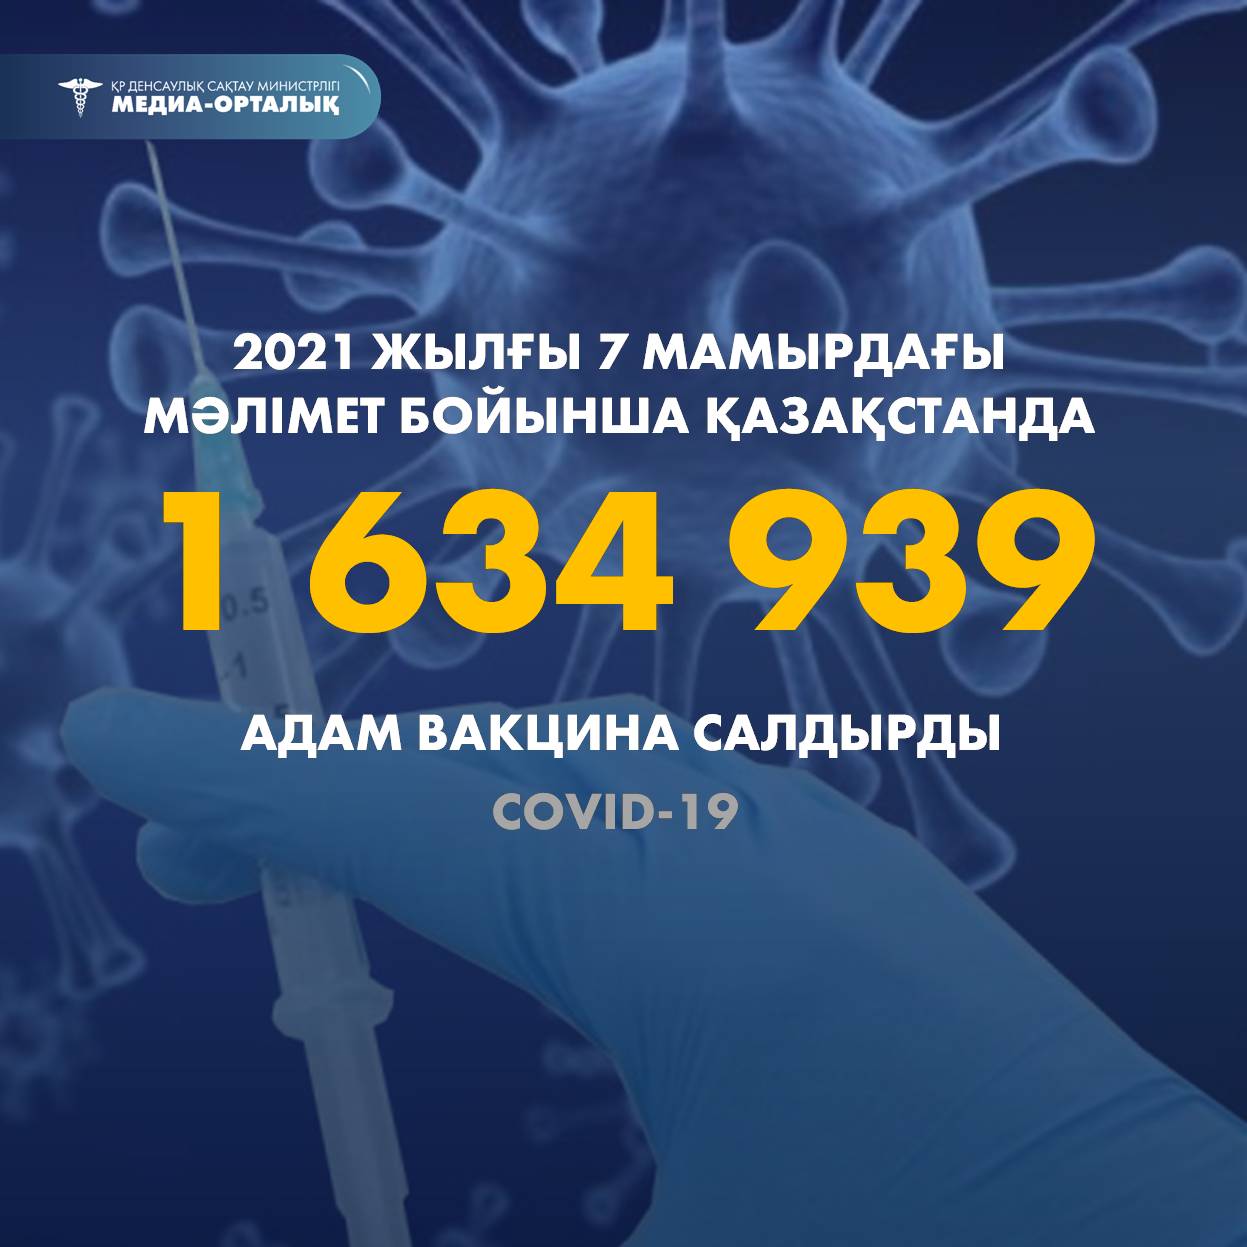 2021 жылғы 7 мамырдағы мәлімет бойынша Қазақстанда 1 634 939 адам вакцина салдырды